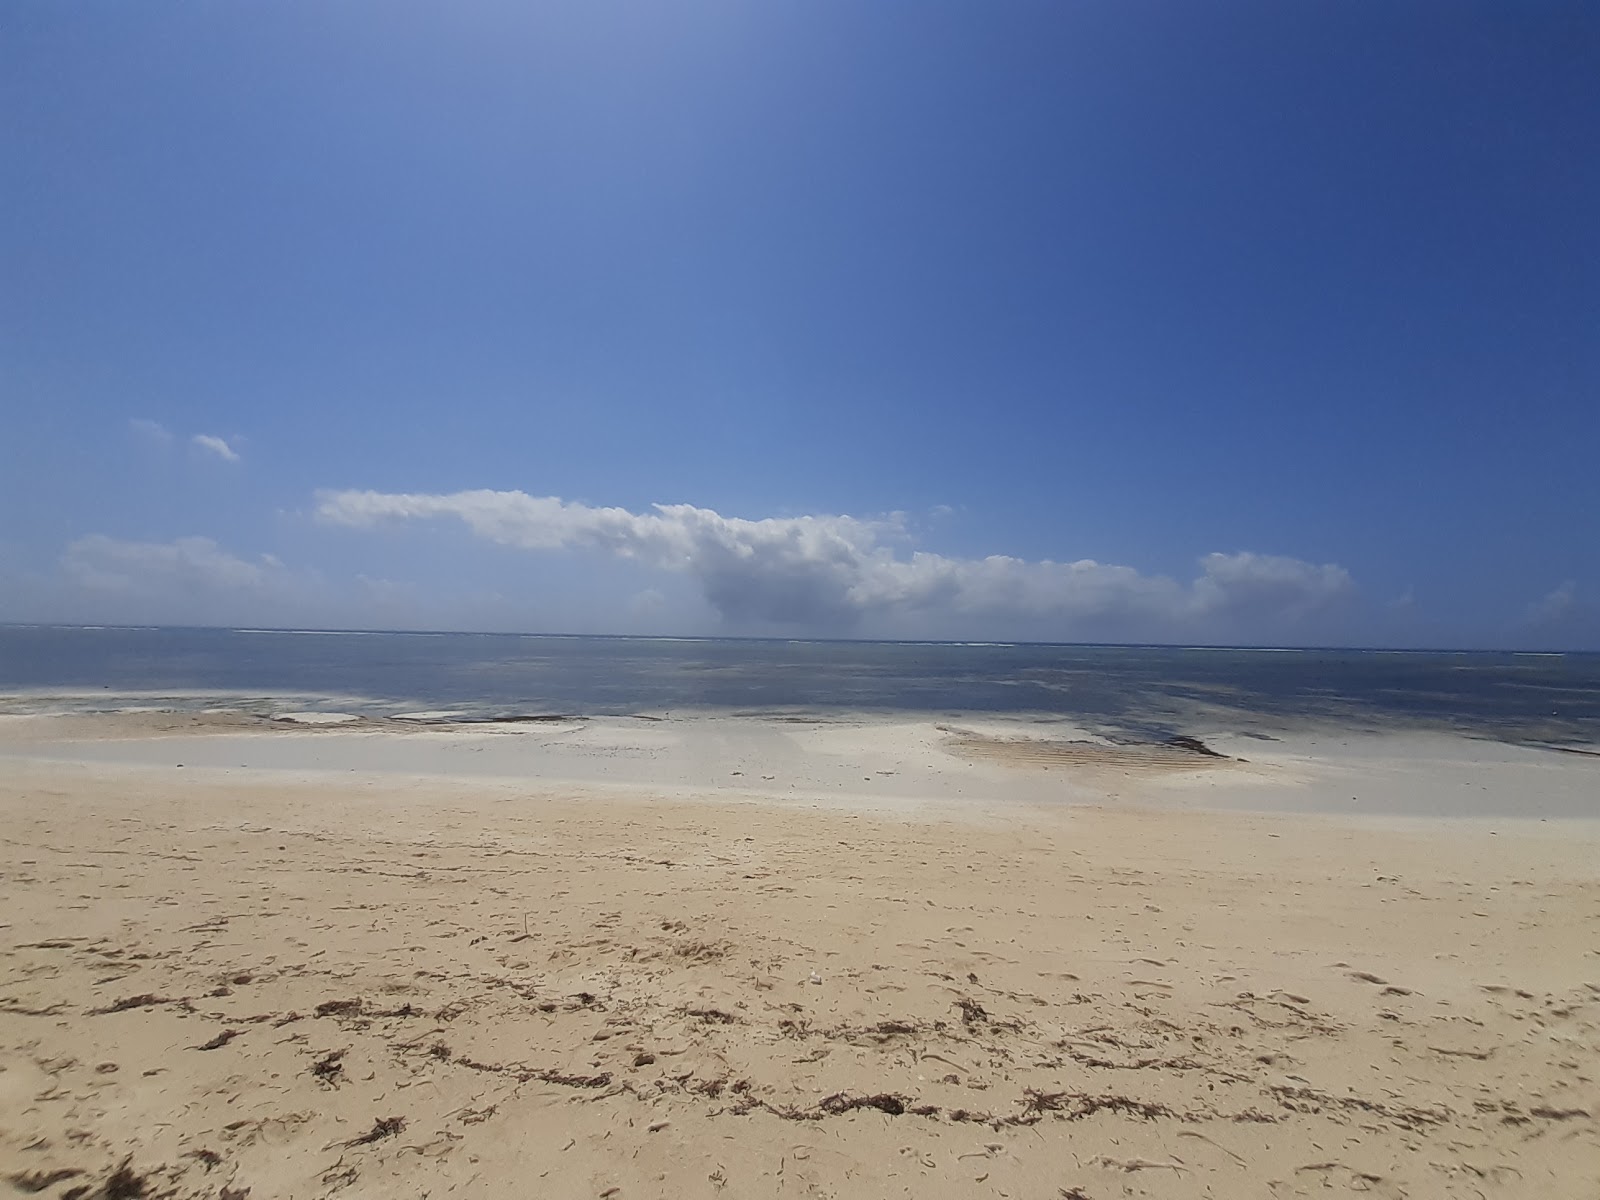 Foto af Kikambala beach - populært sted blandt afslapningskendere